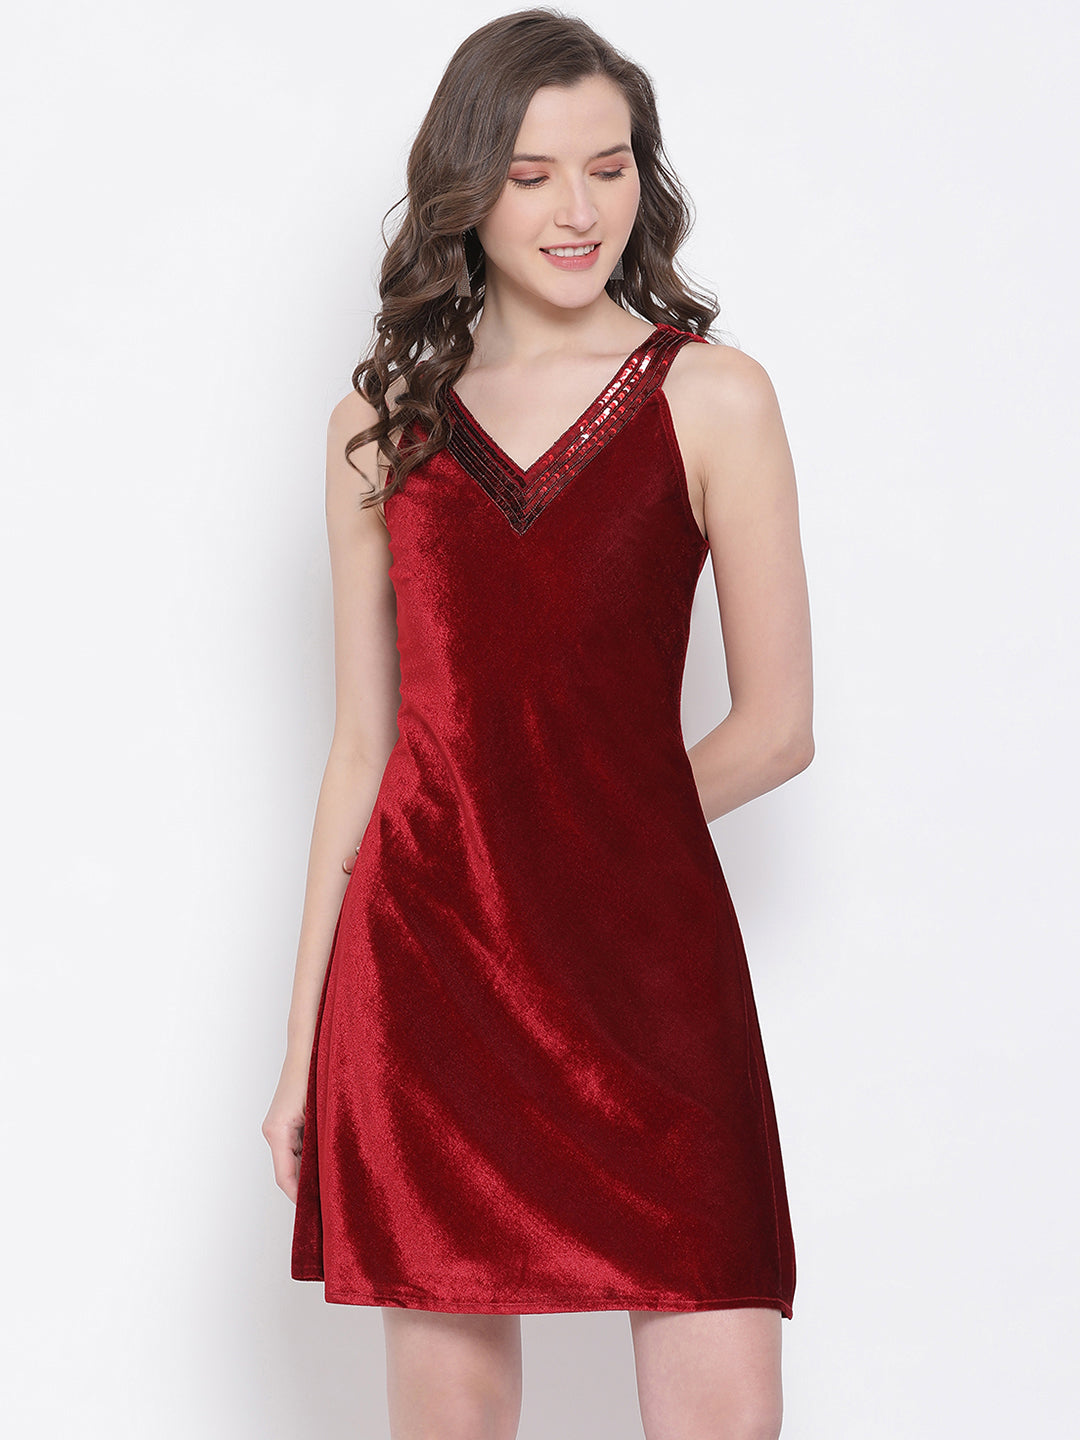 LY2 Velvet Red V-Neck Sleeveless A-Line Party Dress For Women